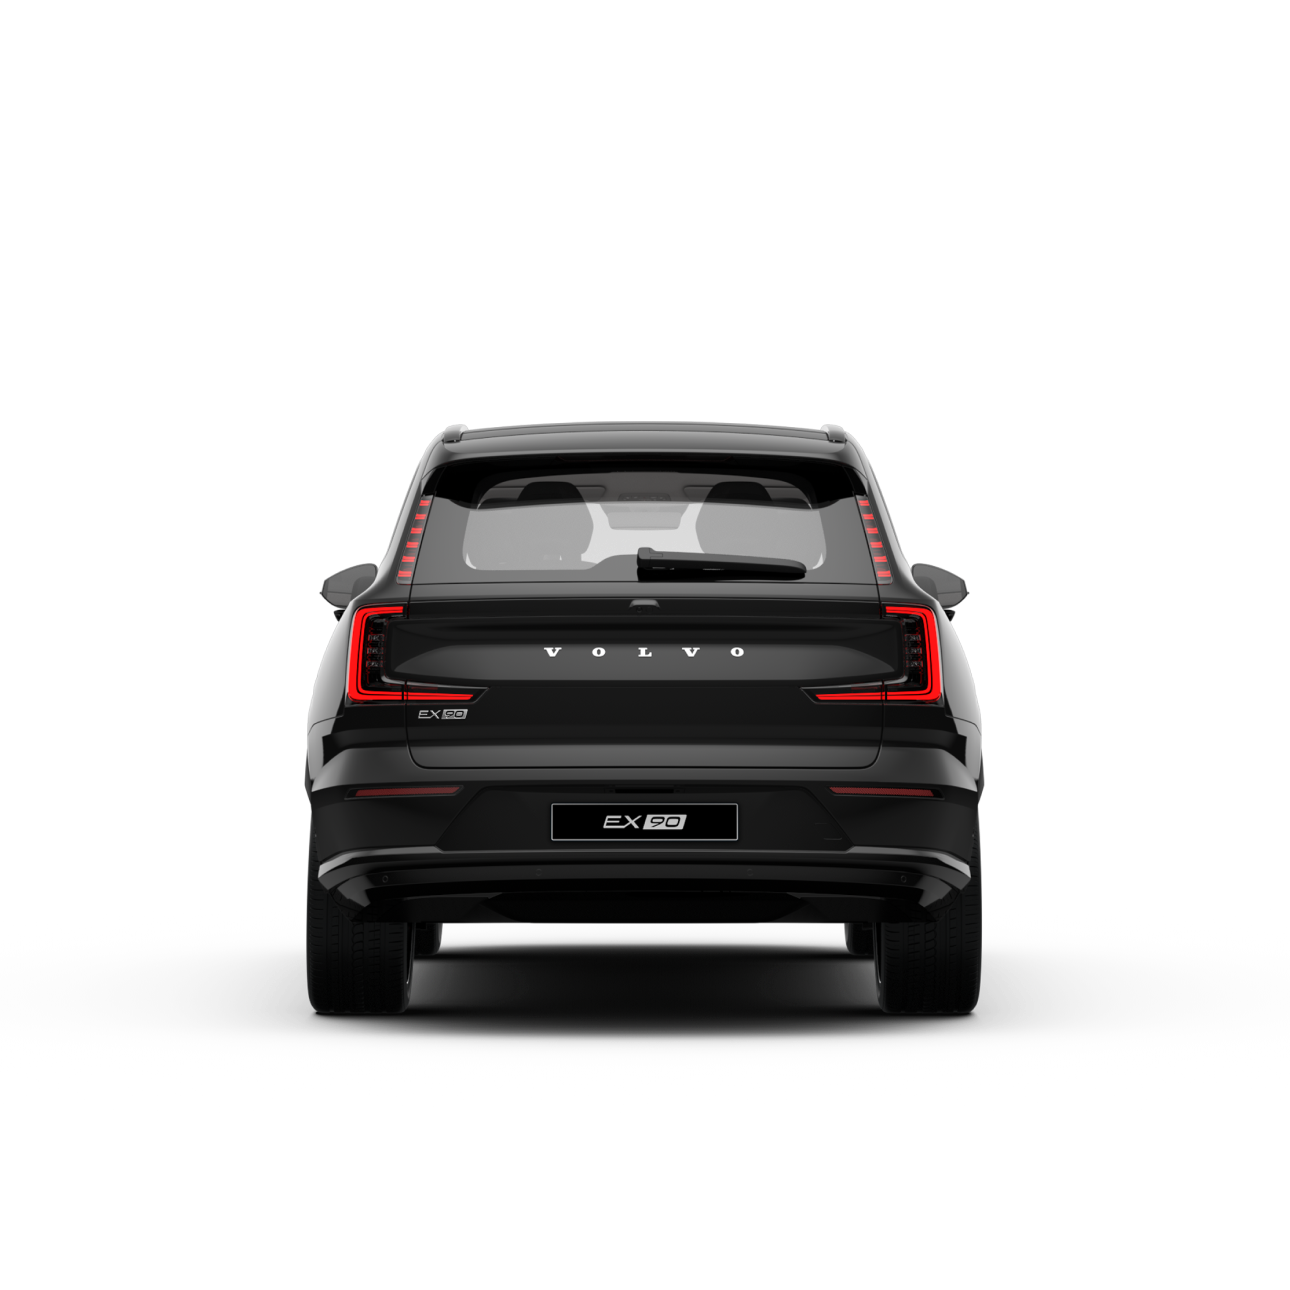 Սև մետալիկ Volvo EX90-ի արտաքին տեսք, կողքից